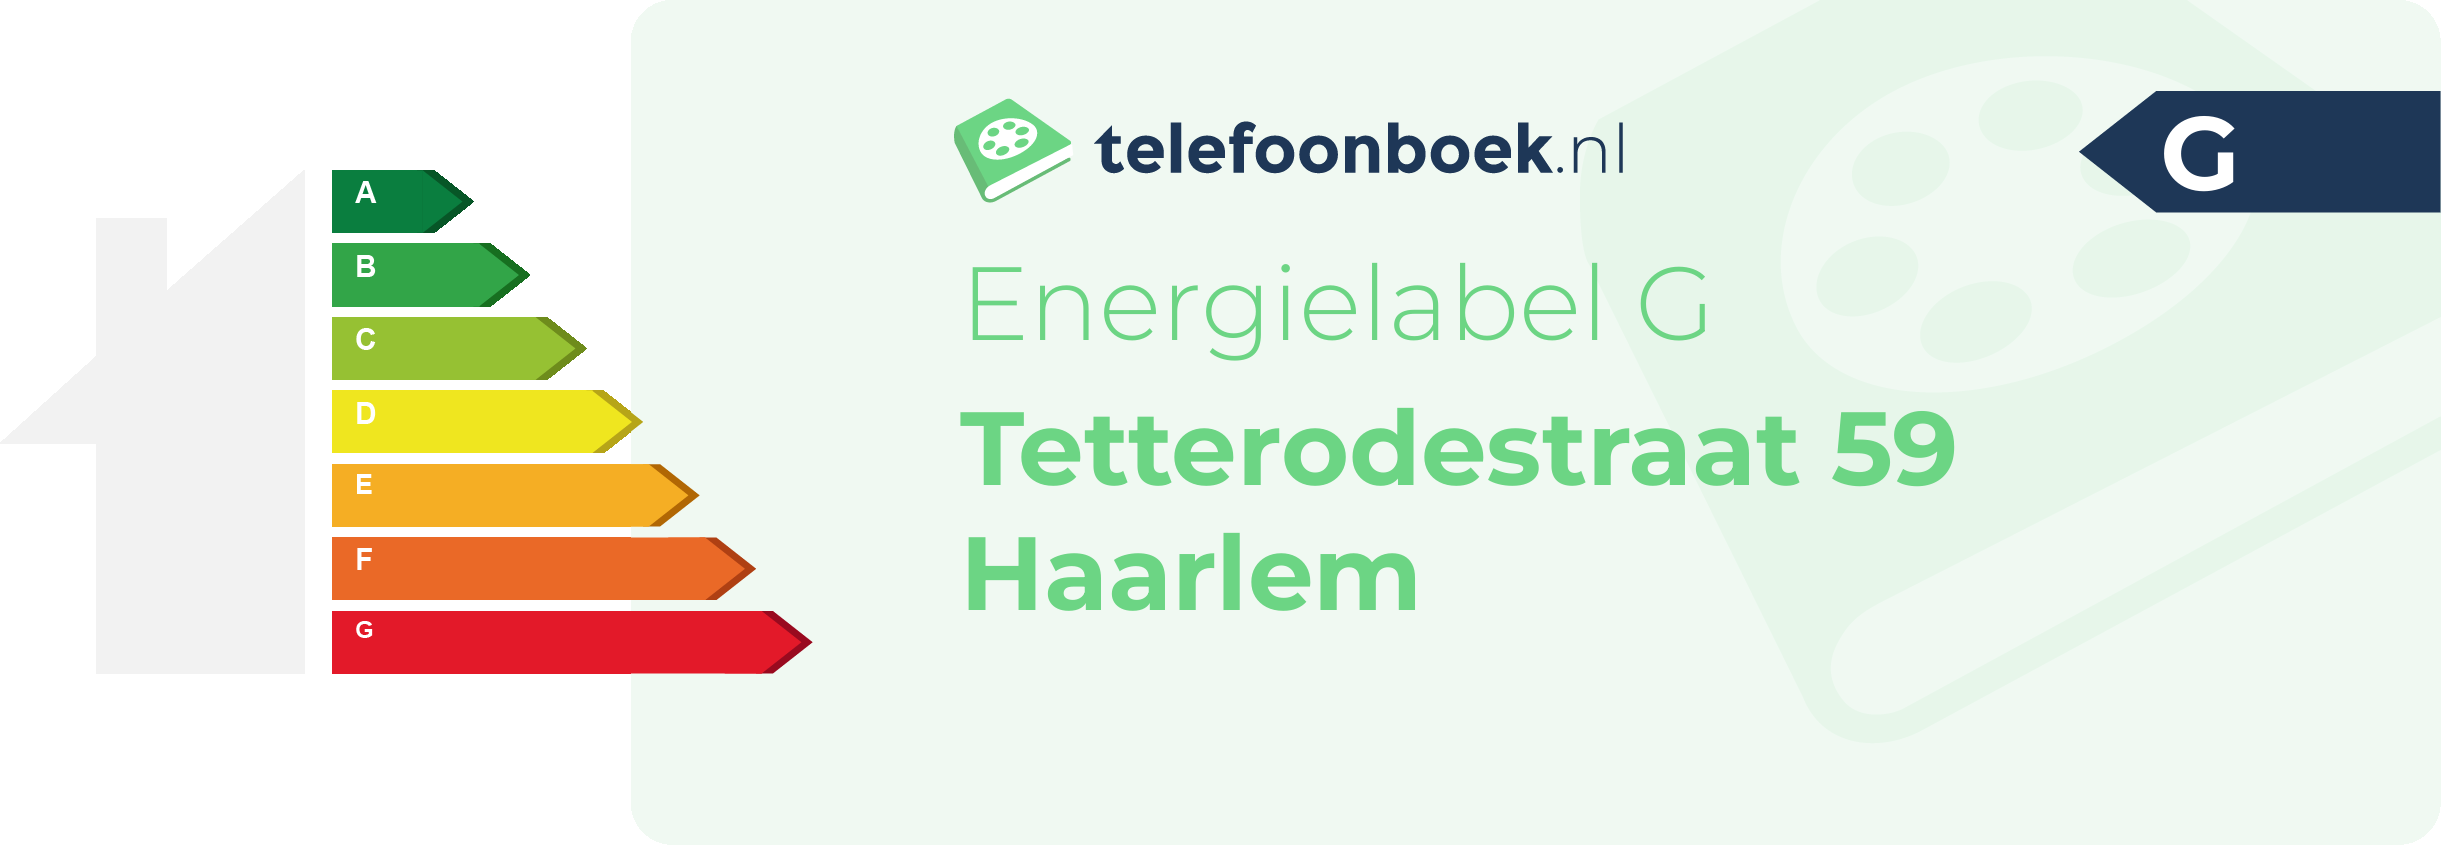 Energielabel Tetterodestraat 59 Haarlem